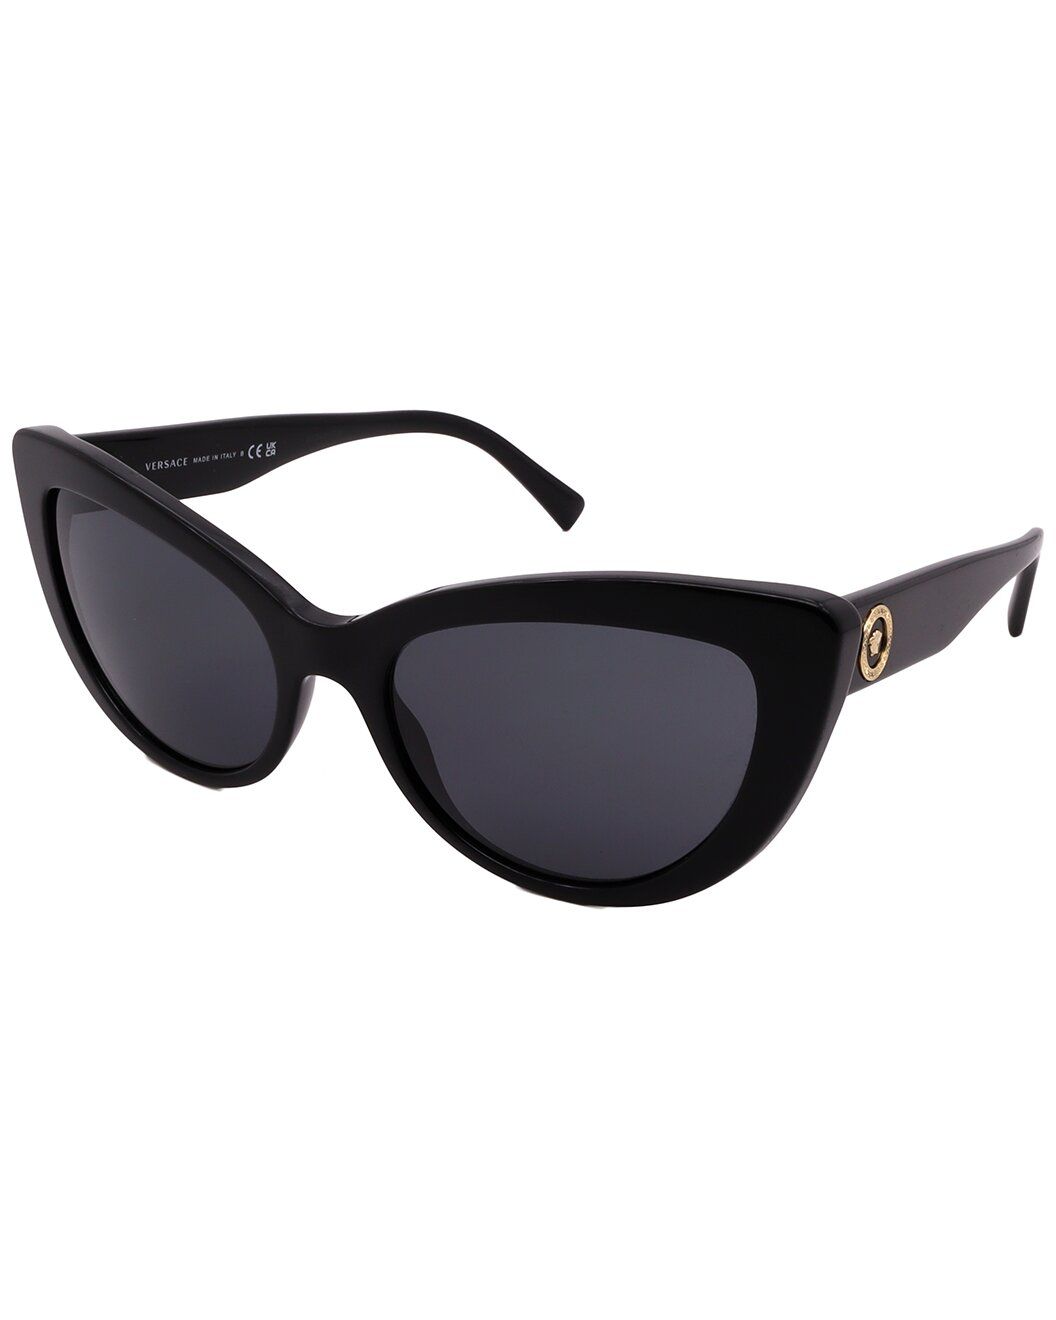 Women's VE4388 54mm Sunglasses | Gilt & Gilt City